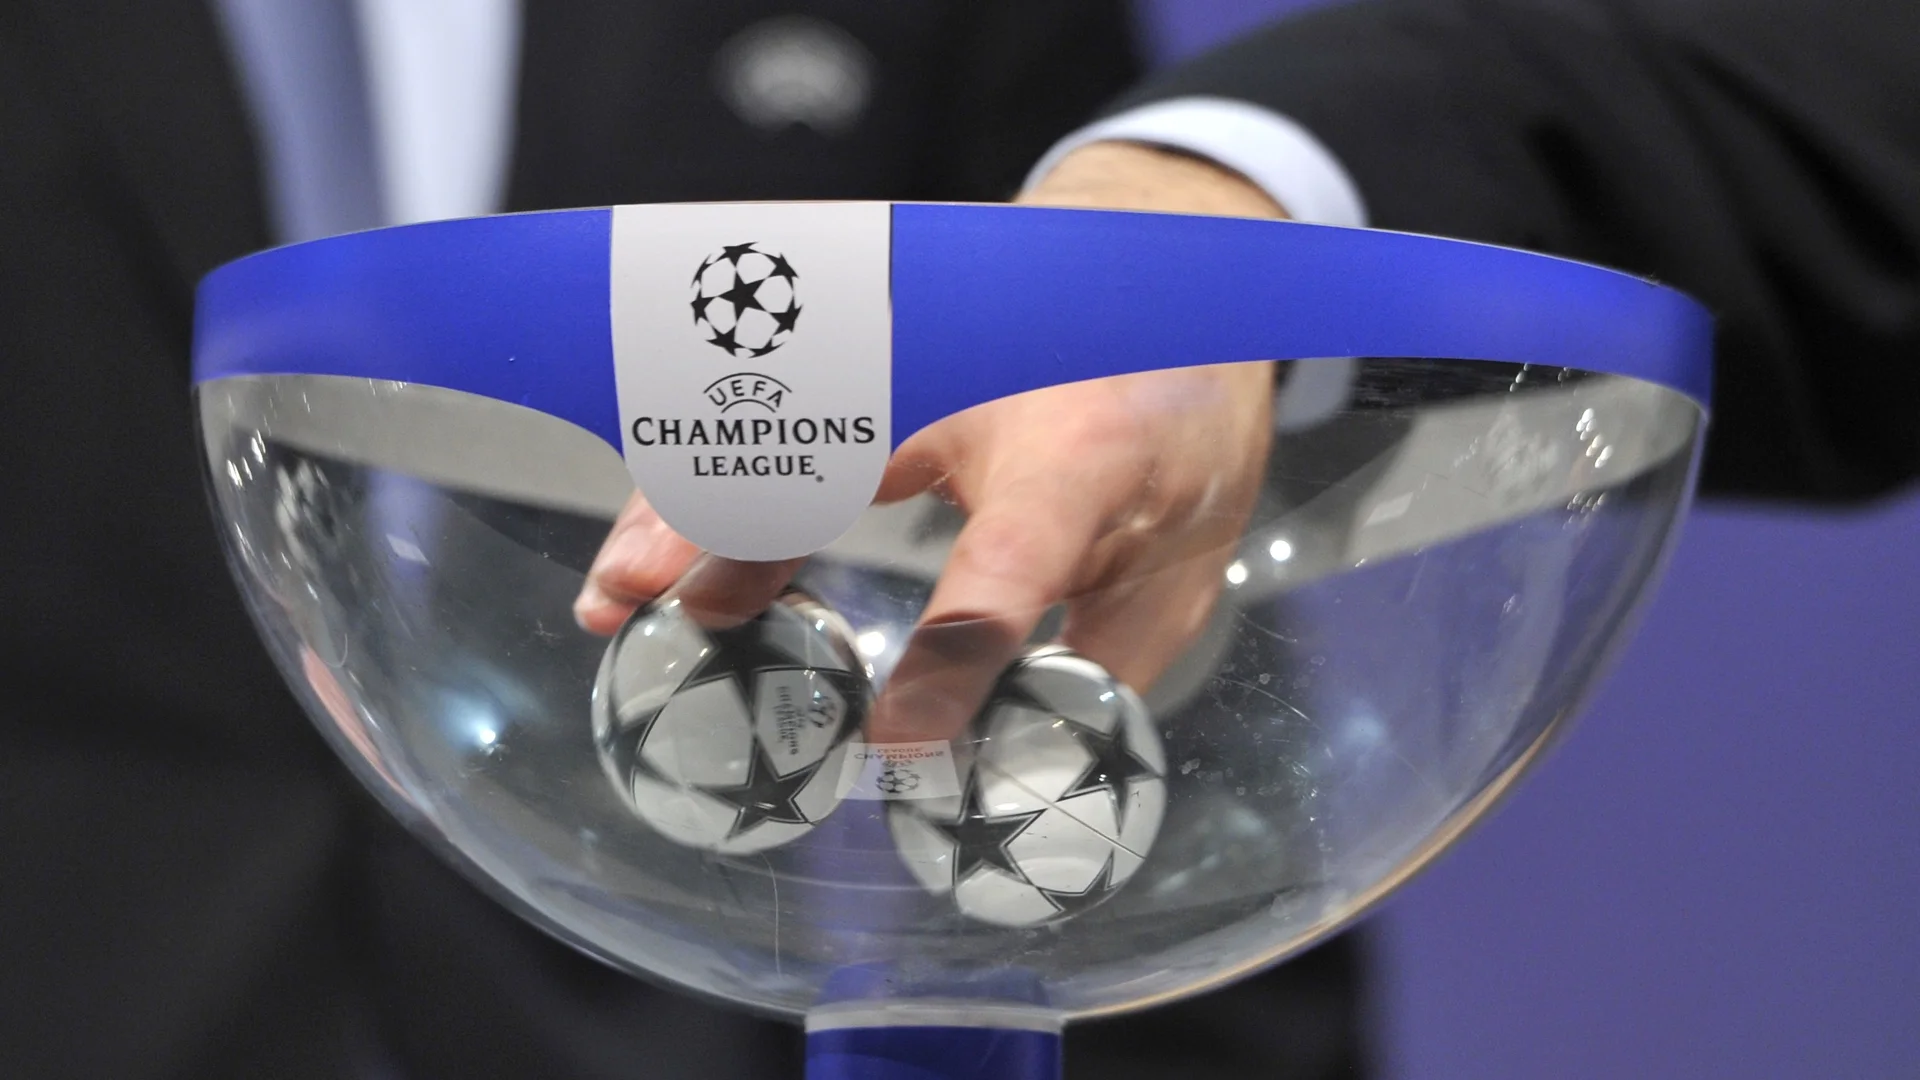 "Кралят" на Европа и действащият шампион се срещат на 1/4-финал в Шампионска лига (ЖРЕБИЙ)